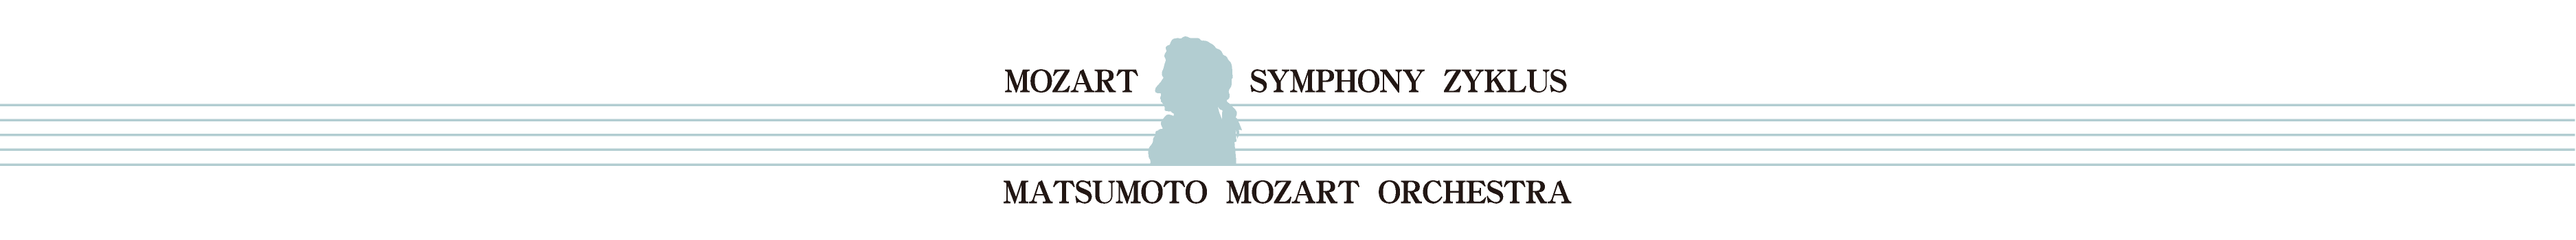 第22回 モーツァルト交響曲・全曲演奏会